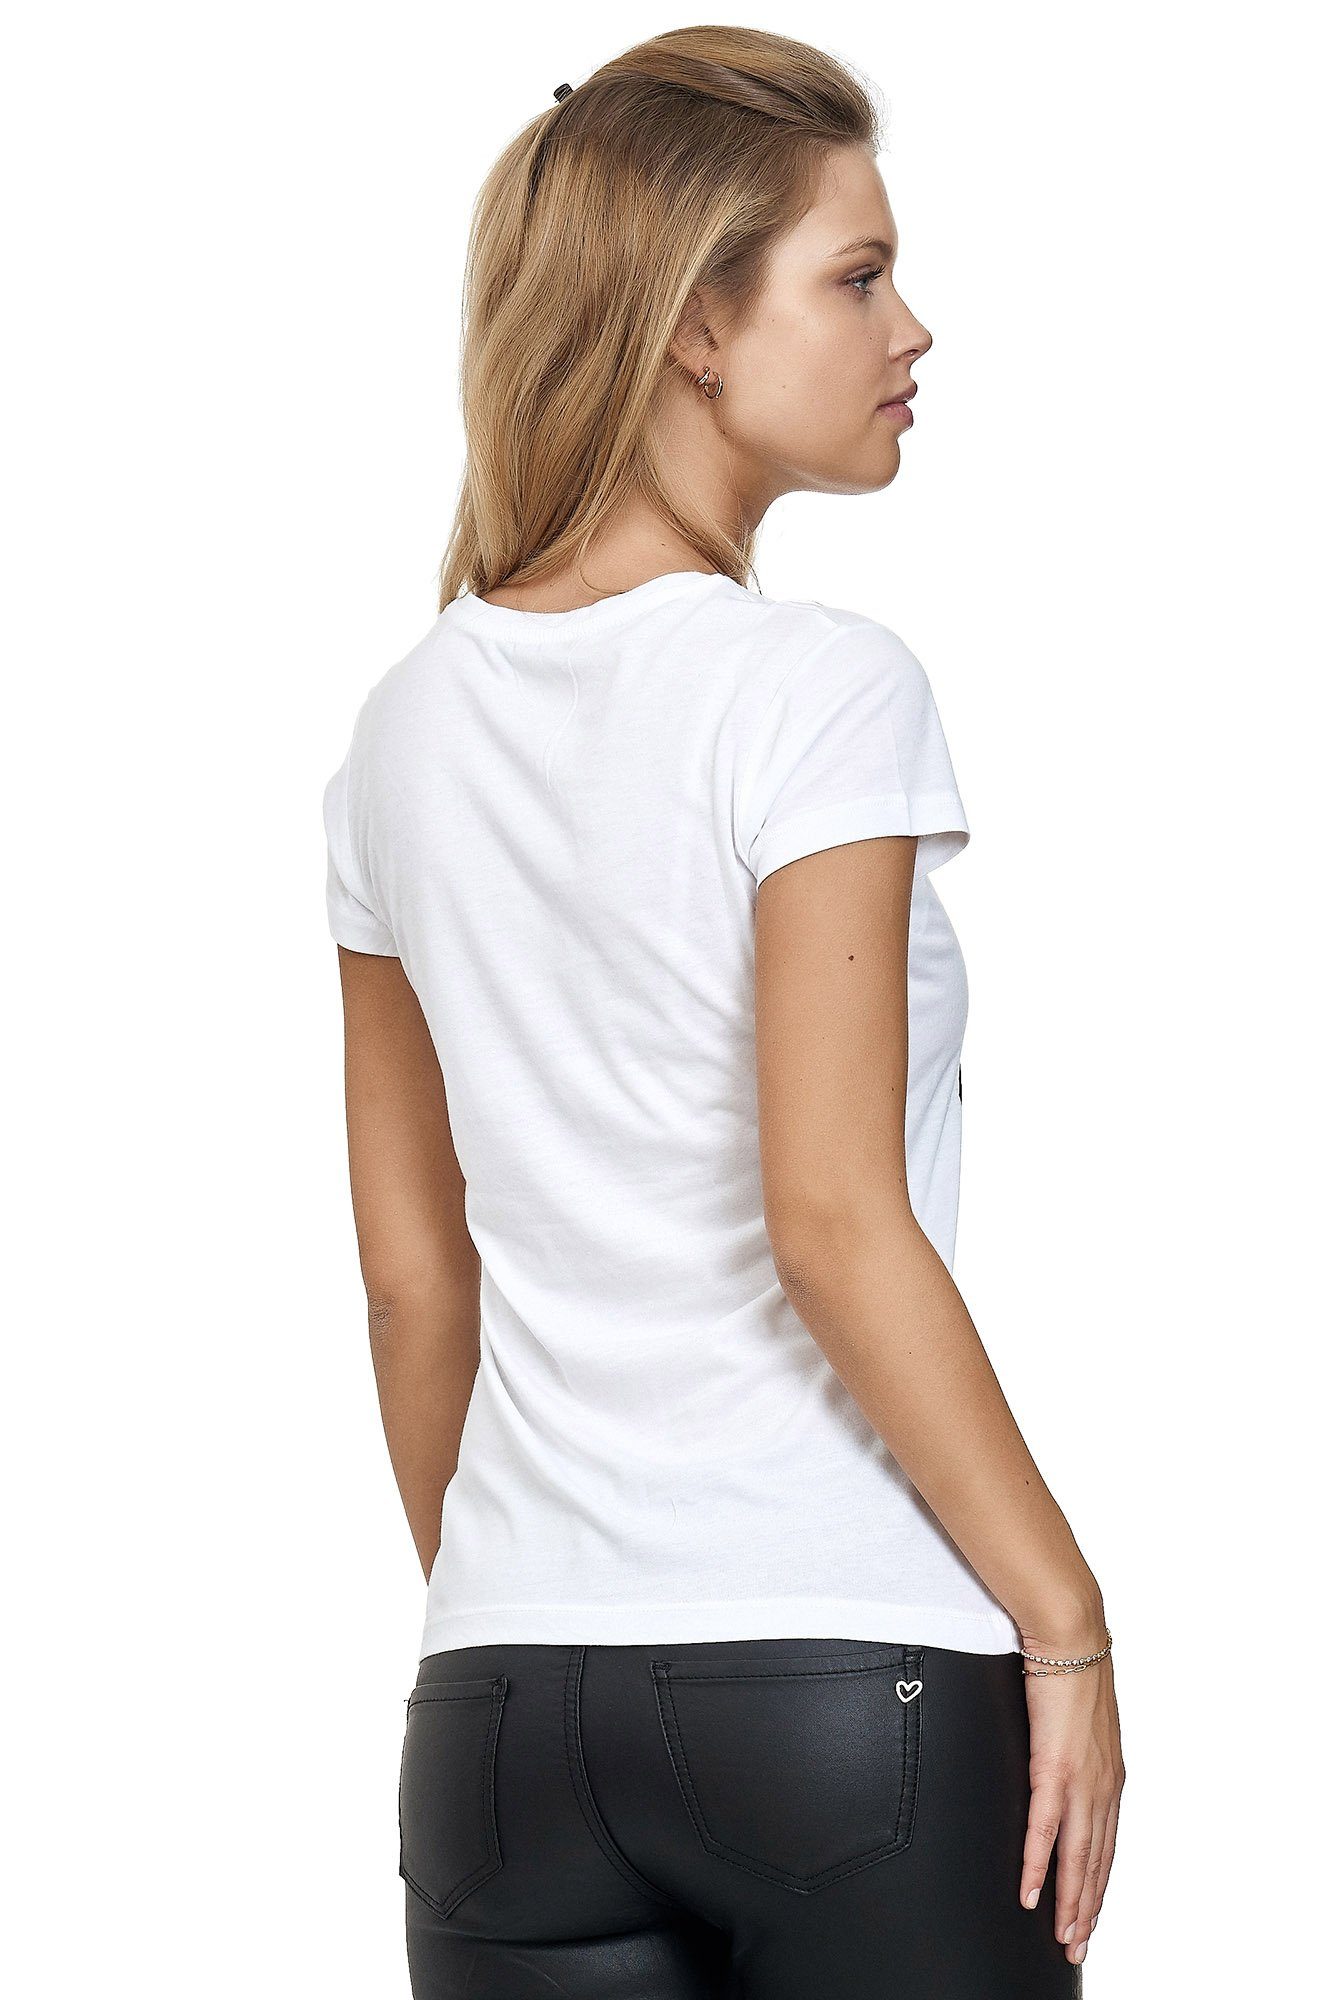 Frontprint glänzendem Decay mit T-Shirt weiß